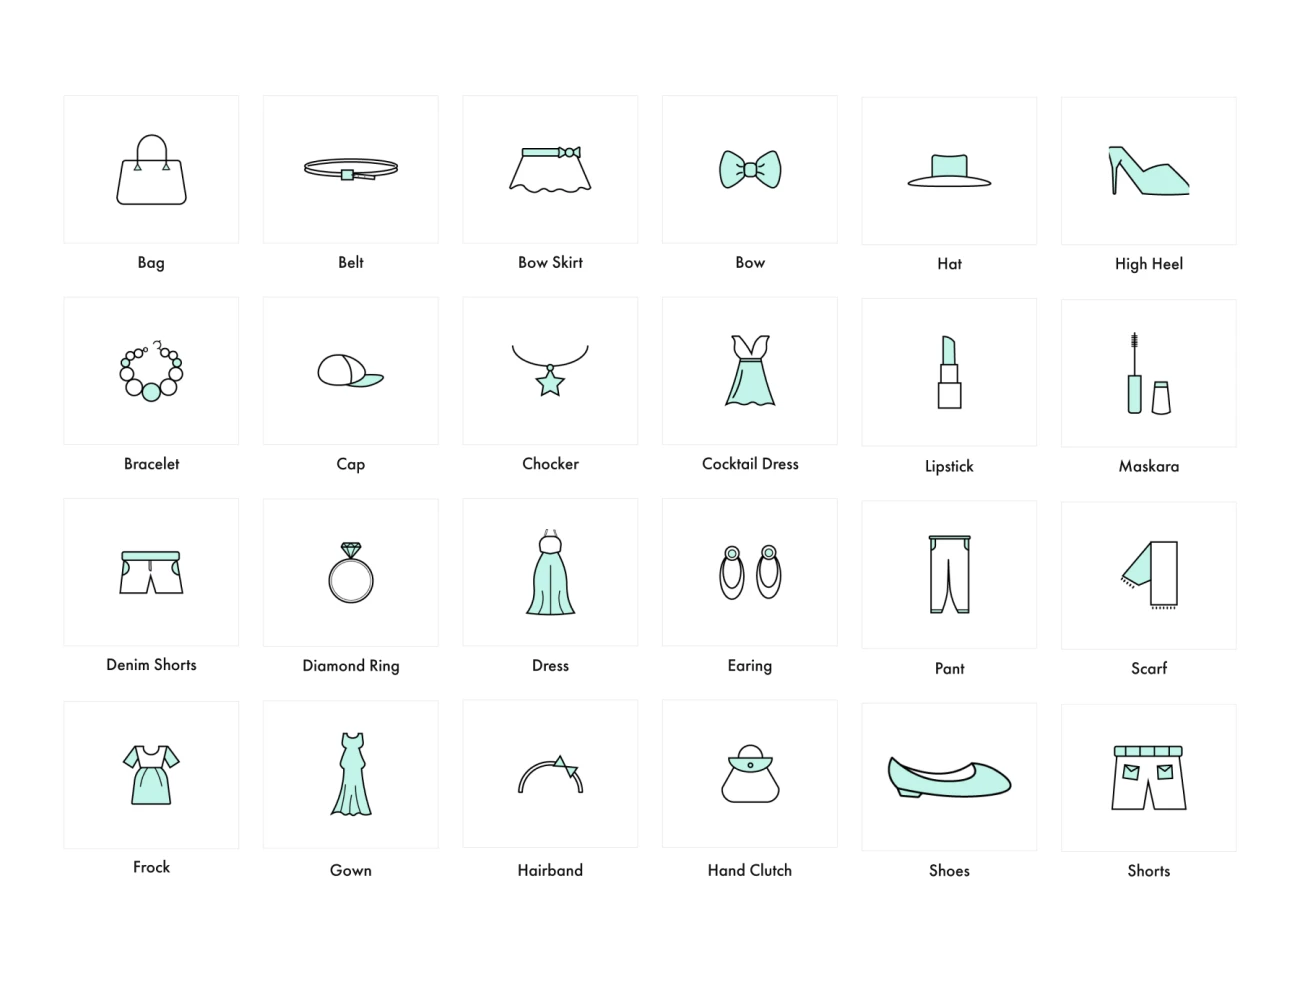 40款服饰配件图标素材下载 Clothes & Accessories Icons .sketch .ai插图5